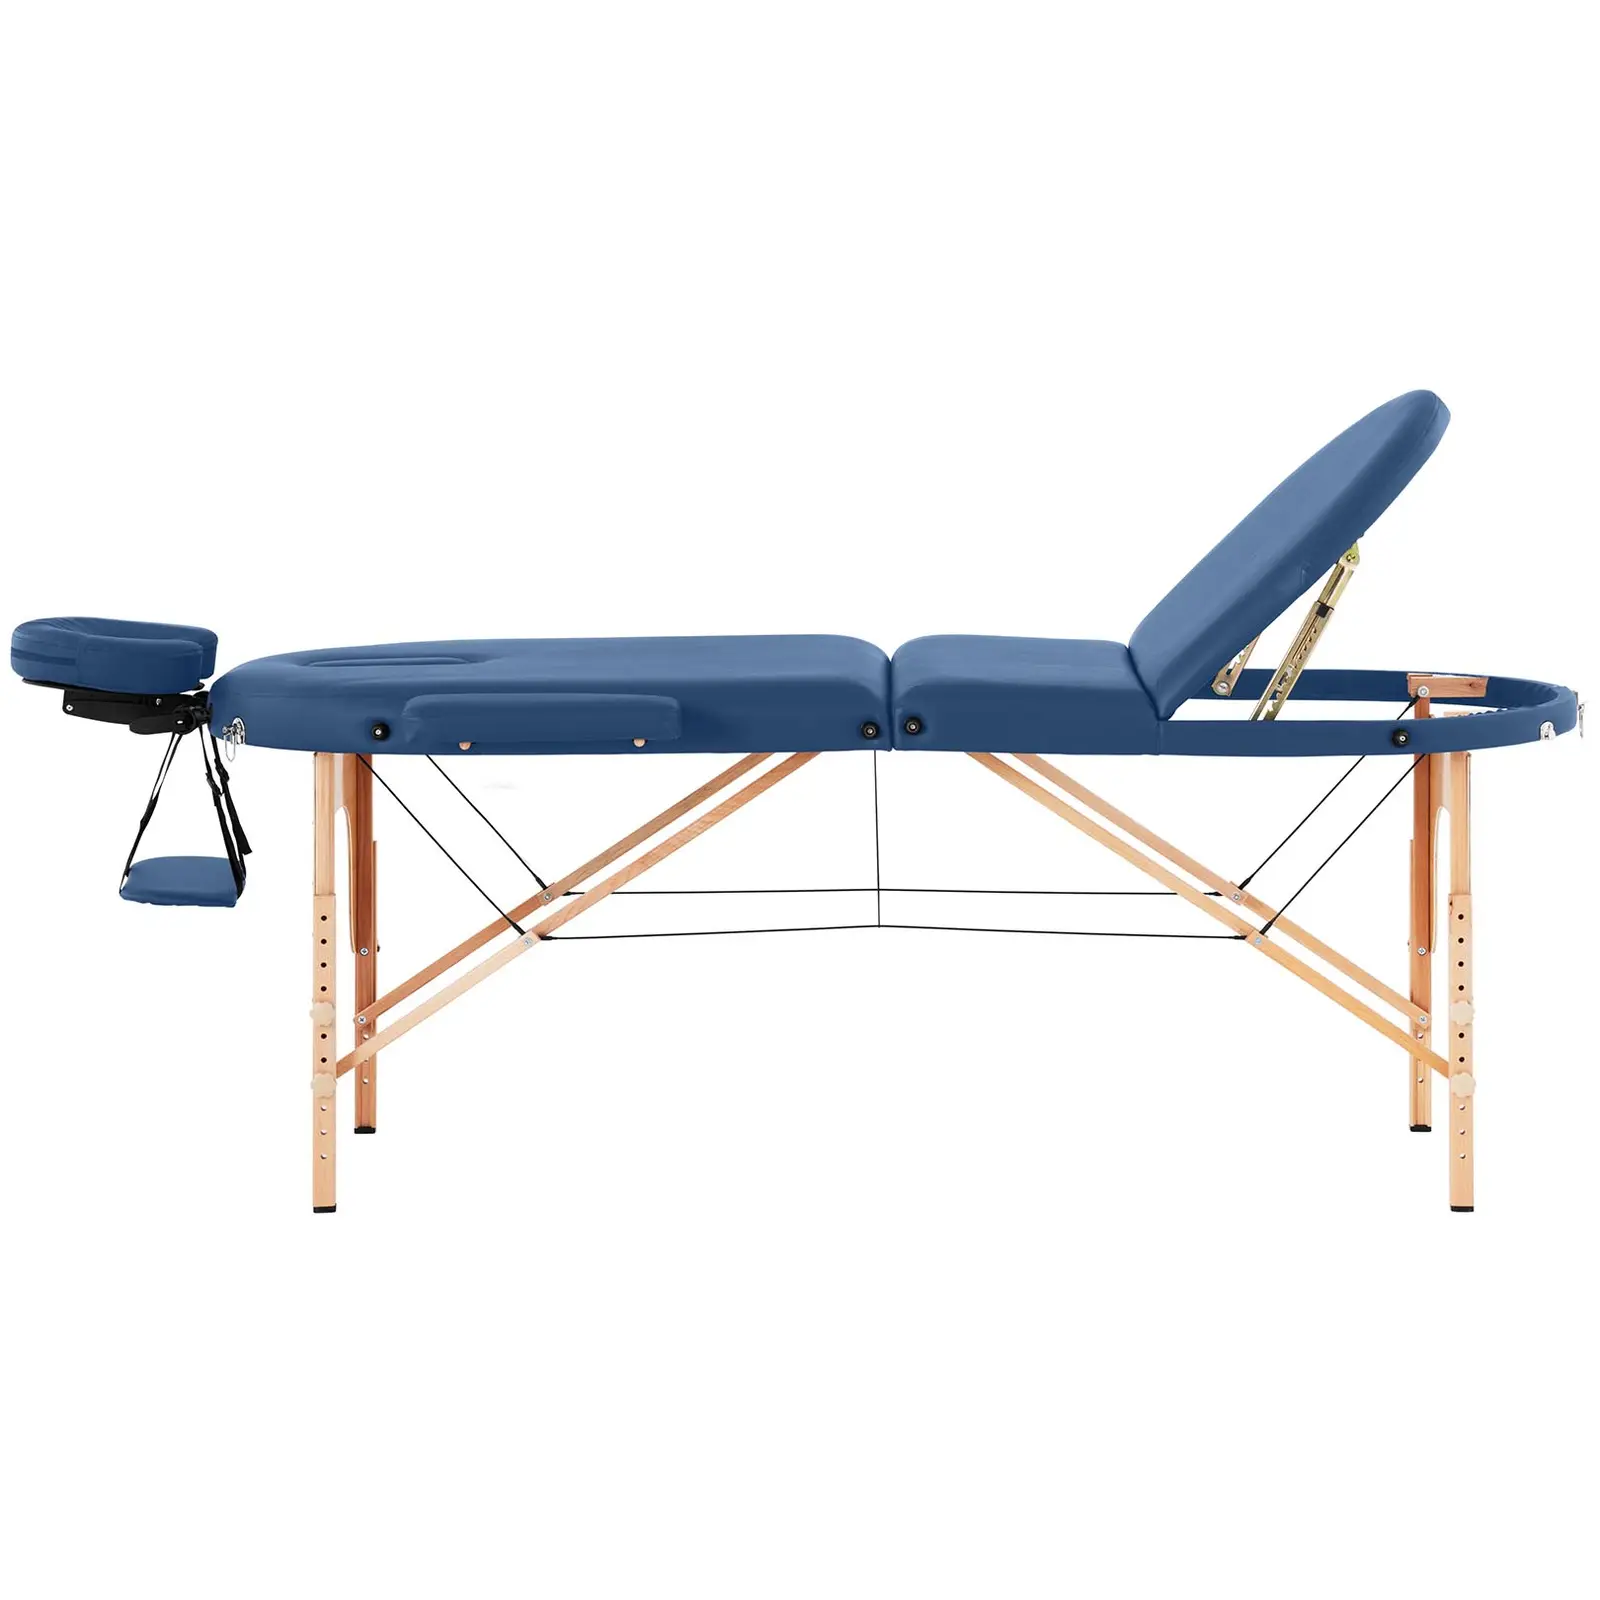 Lettino massaggio portatile - 185-211 x 70-88 x 63-85 cm - 227 kg - Blu